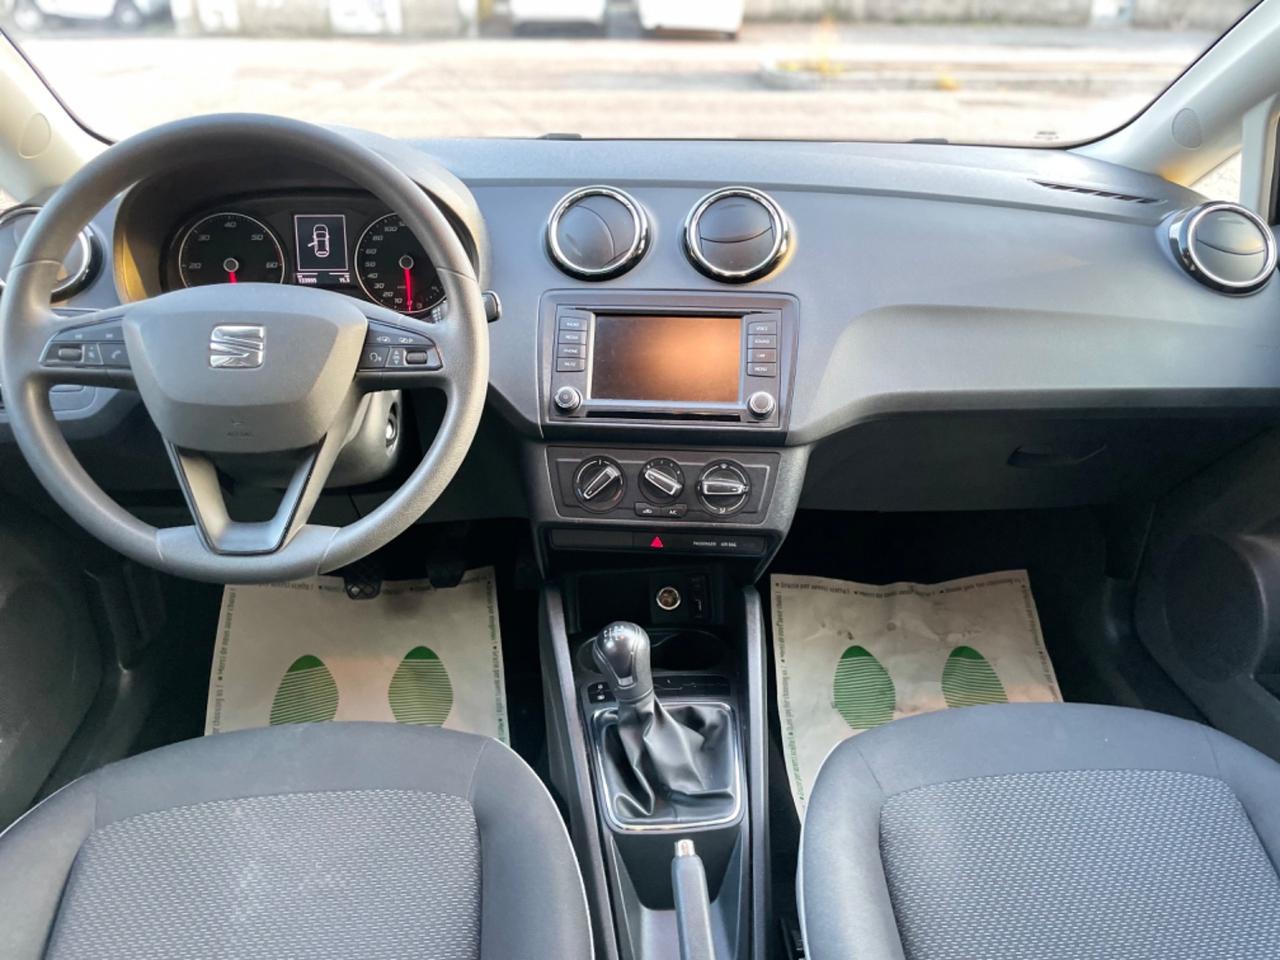 Seat Ibiza 1.4 TDI 90 CV/van 5posti / Business/kmcerfiticati